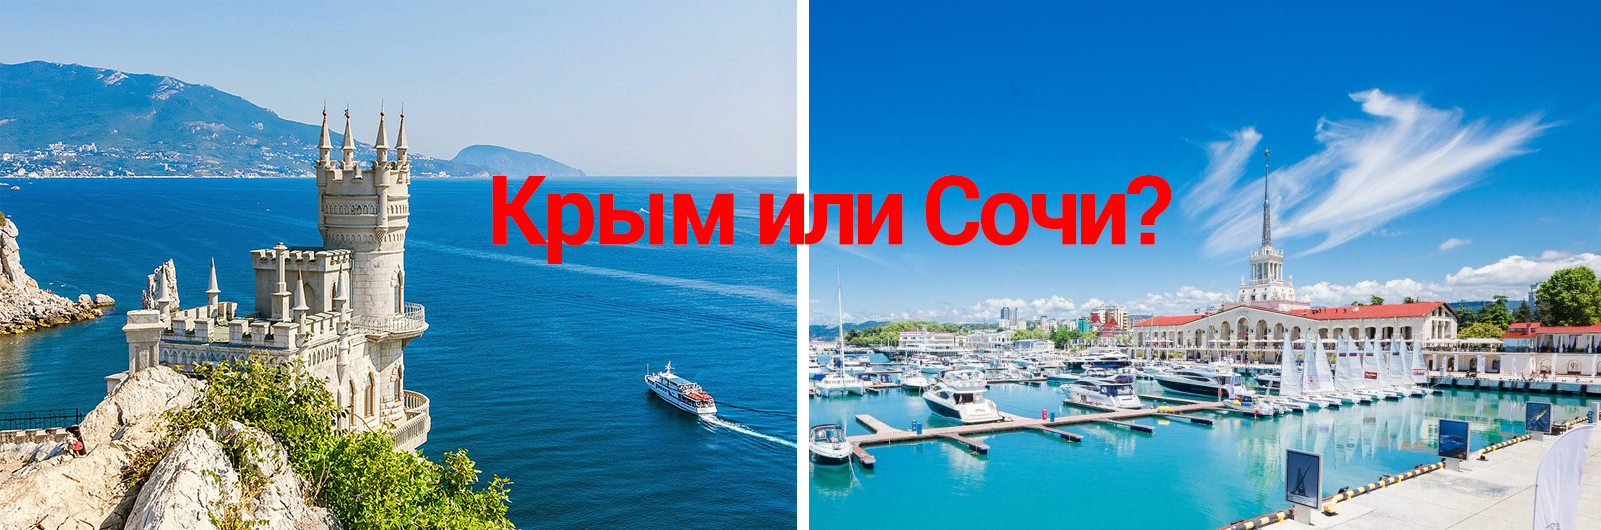 Крым или Сочи: где дешевле?